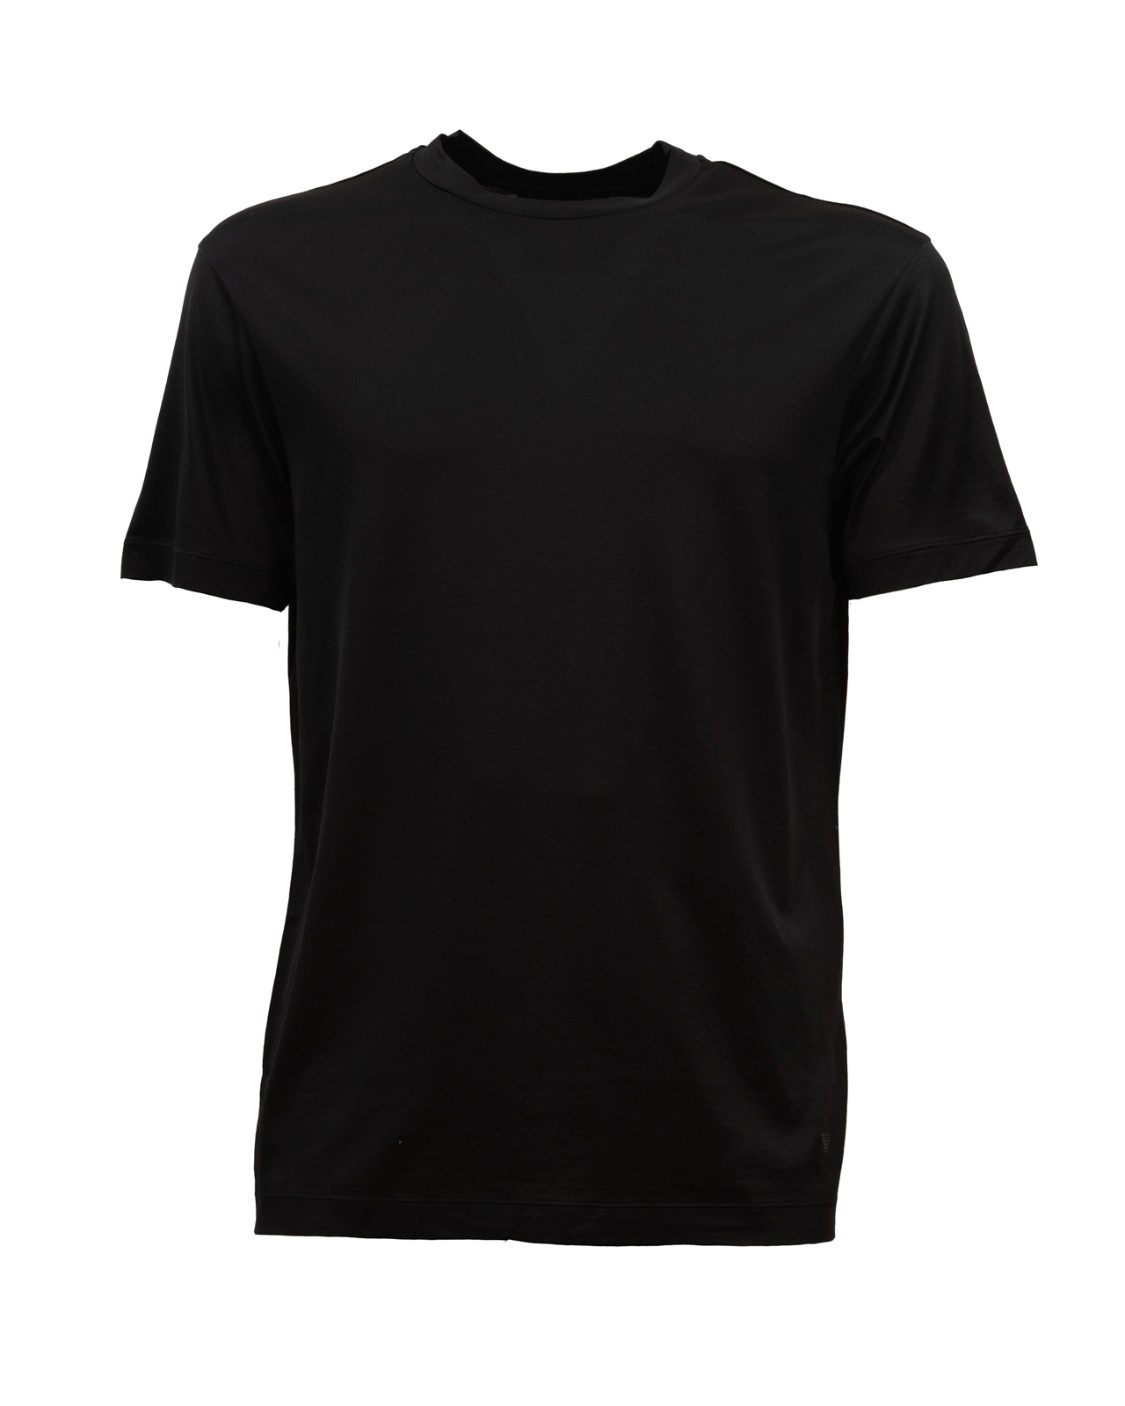 shop EMPORIO ARMANI  T-shirt: Emporio Armani t-shirt in cotone elasticizzato.
Scollo rotondo.
Maniche corte.
Composizione: 70% lyocell 30% cotone.
Fabbricato in Vietnam.. 8N1TE8 1JUVZ-0999 number 5248518